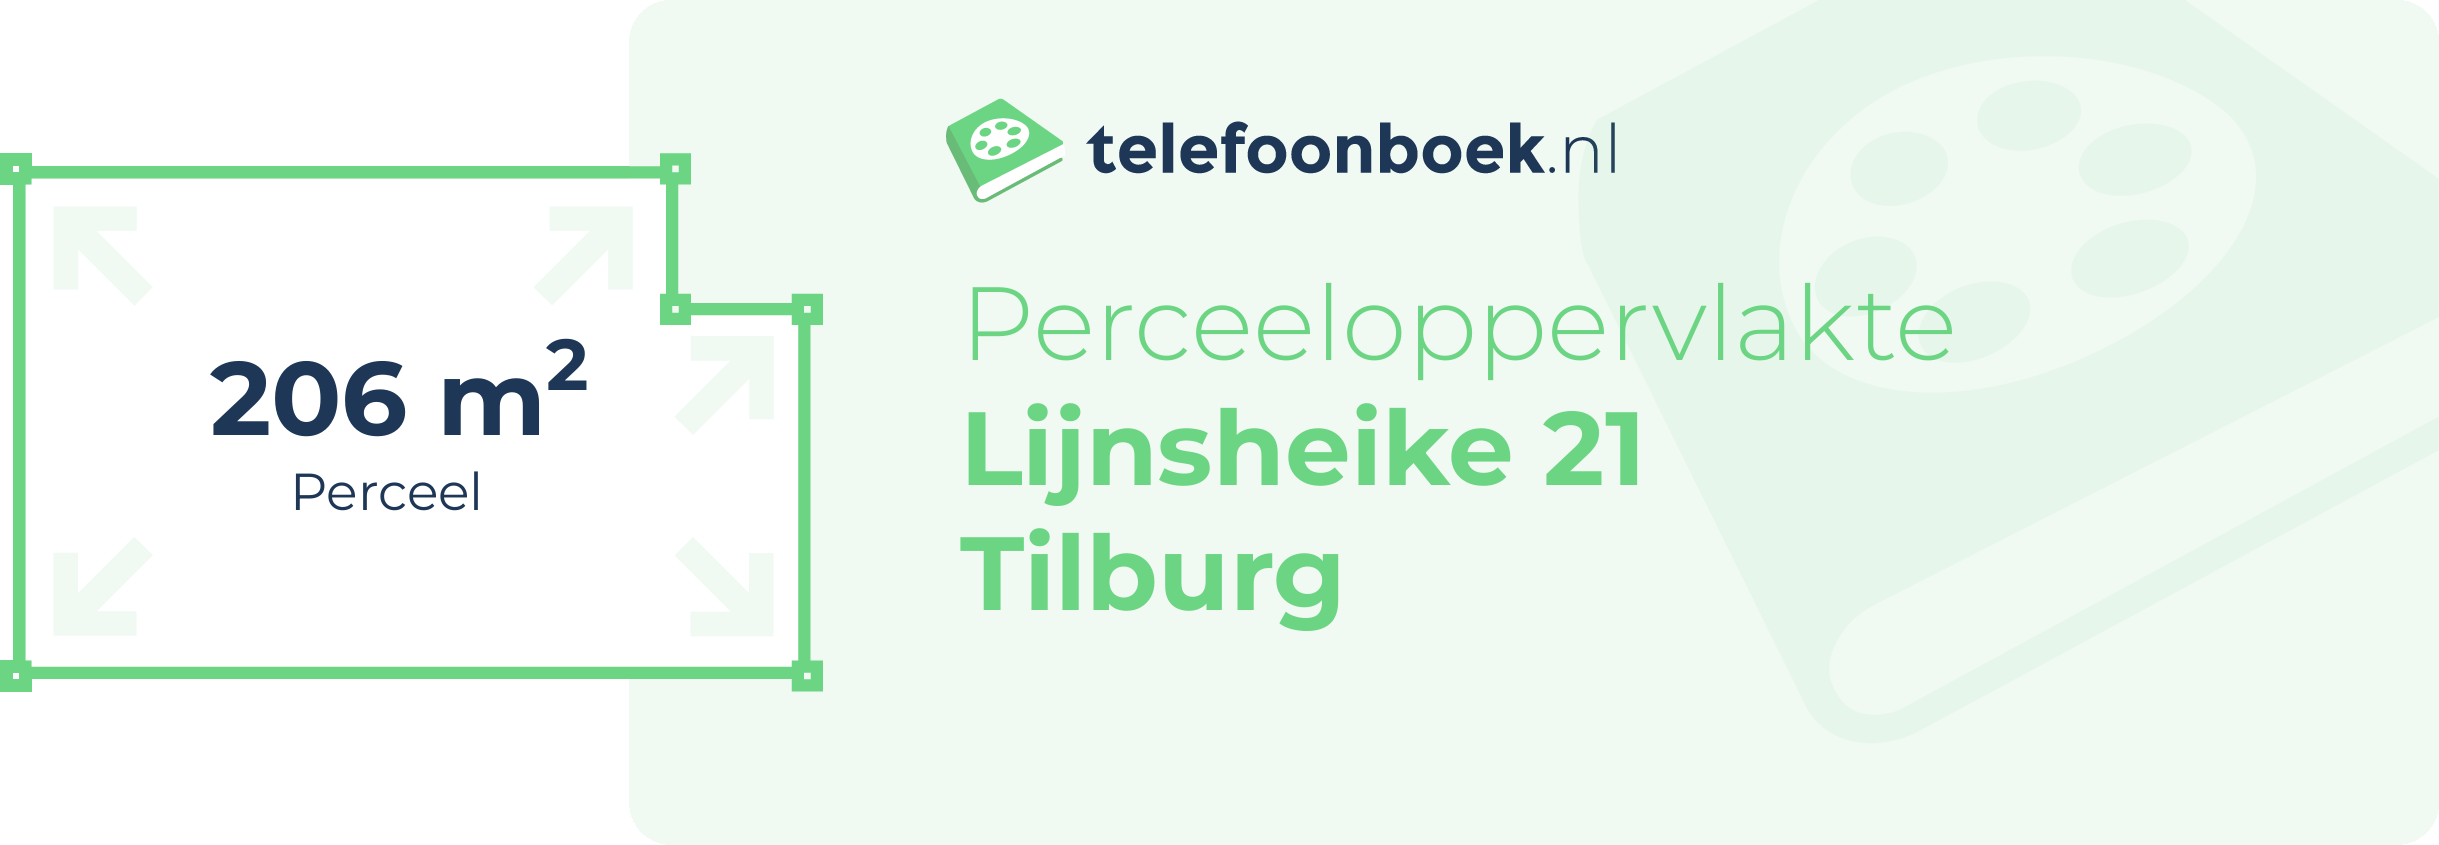 Perceeloppervlakte Lijnsheike 21 Tilburg